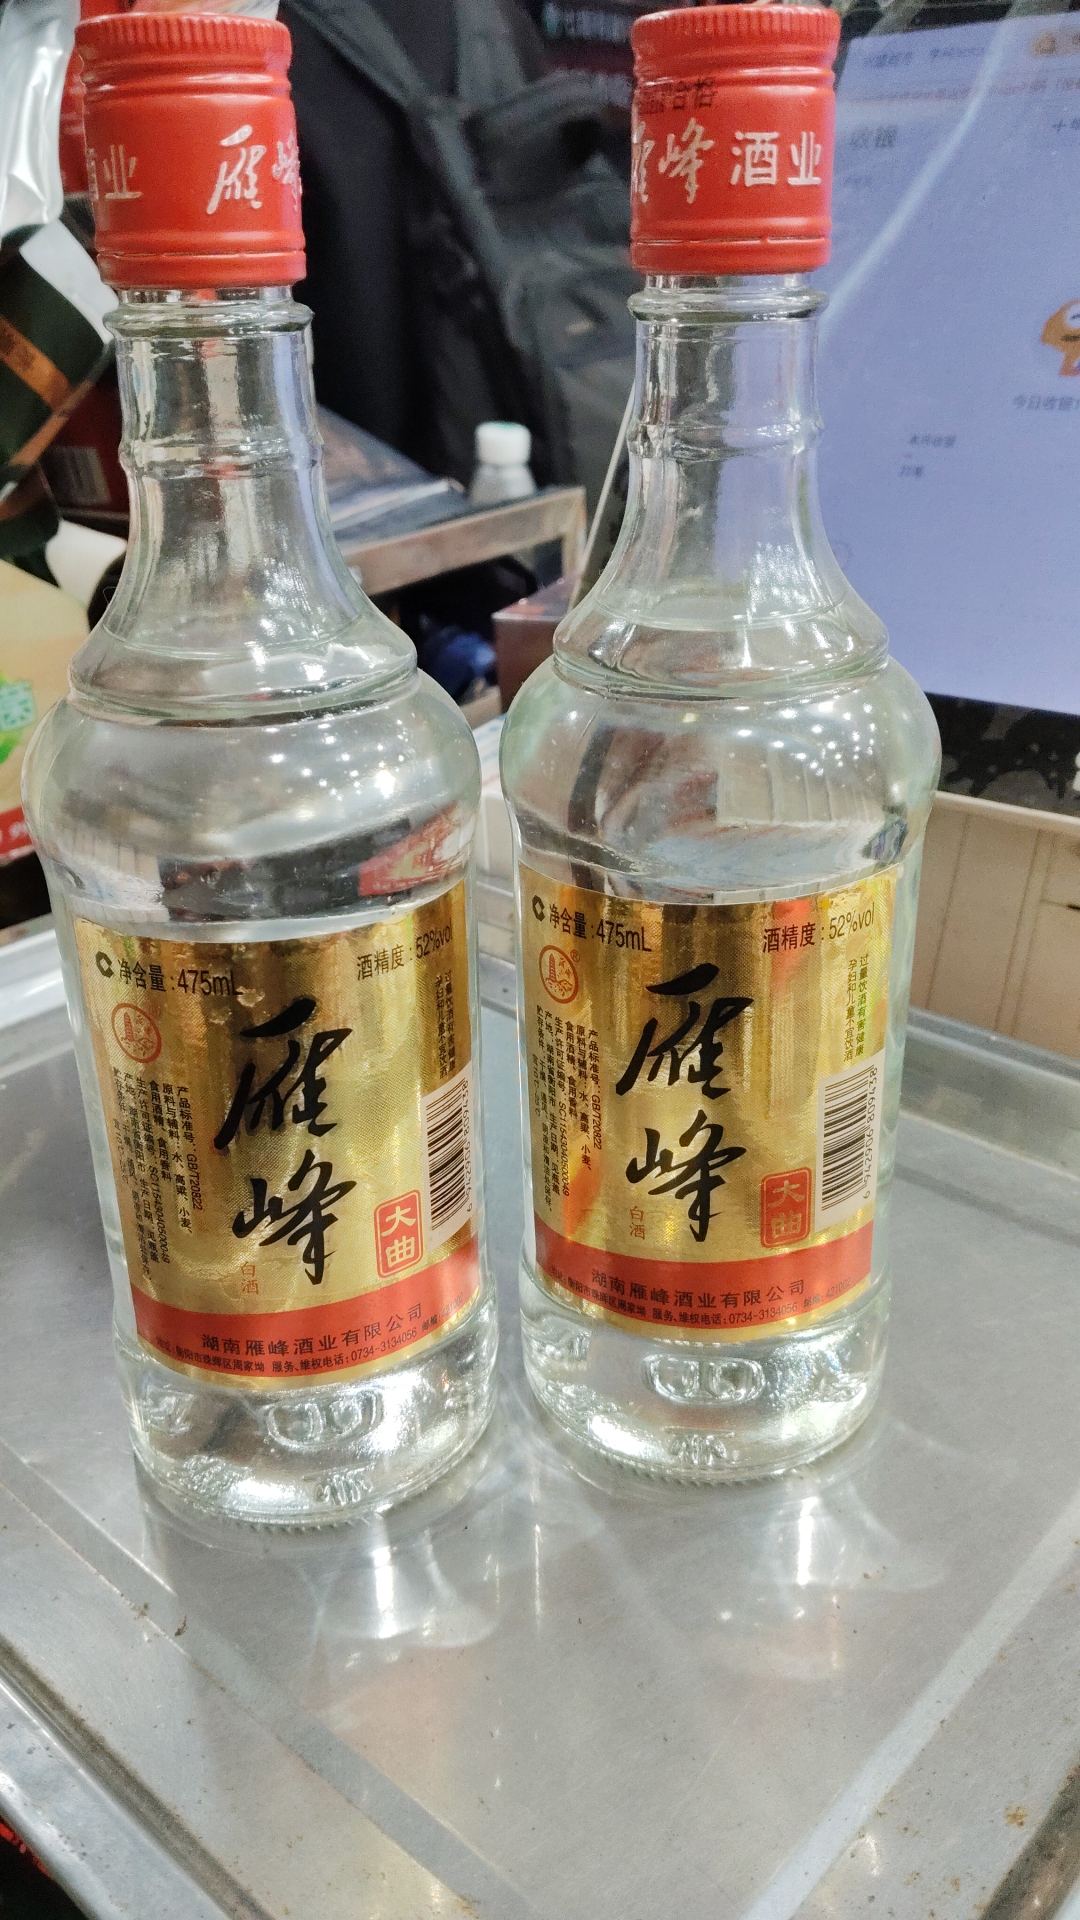 衡阳雁峰王酒雁峰大曲52度475m单瓶裸瓶简装5瓶起包邮衡阳特产